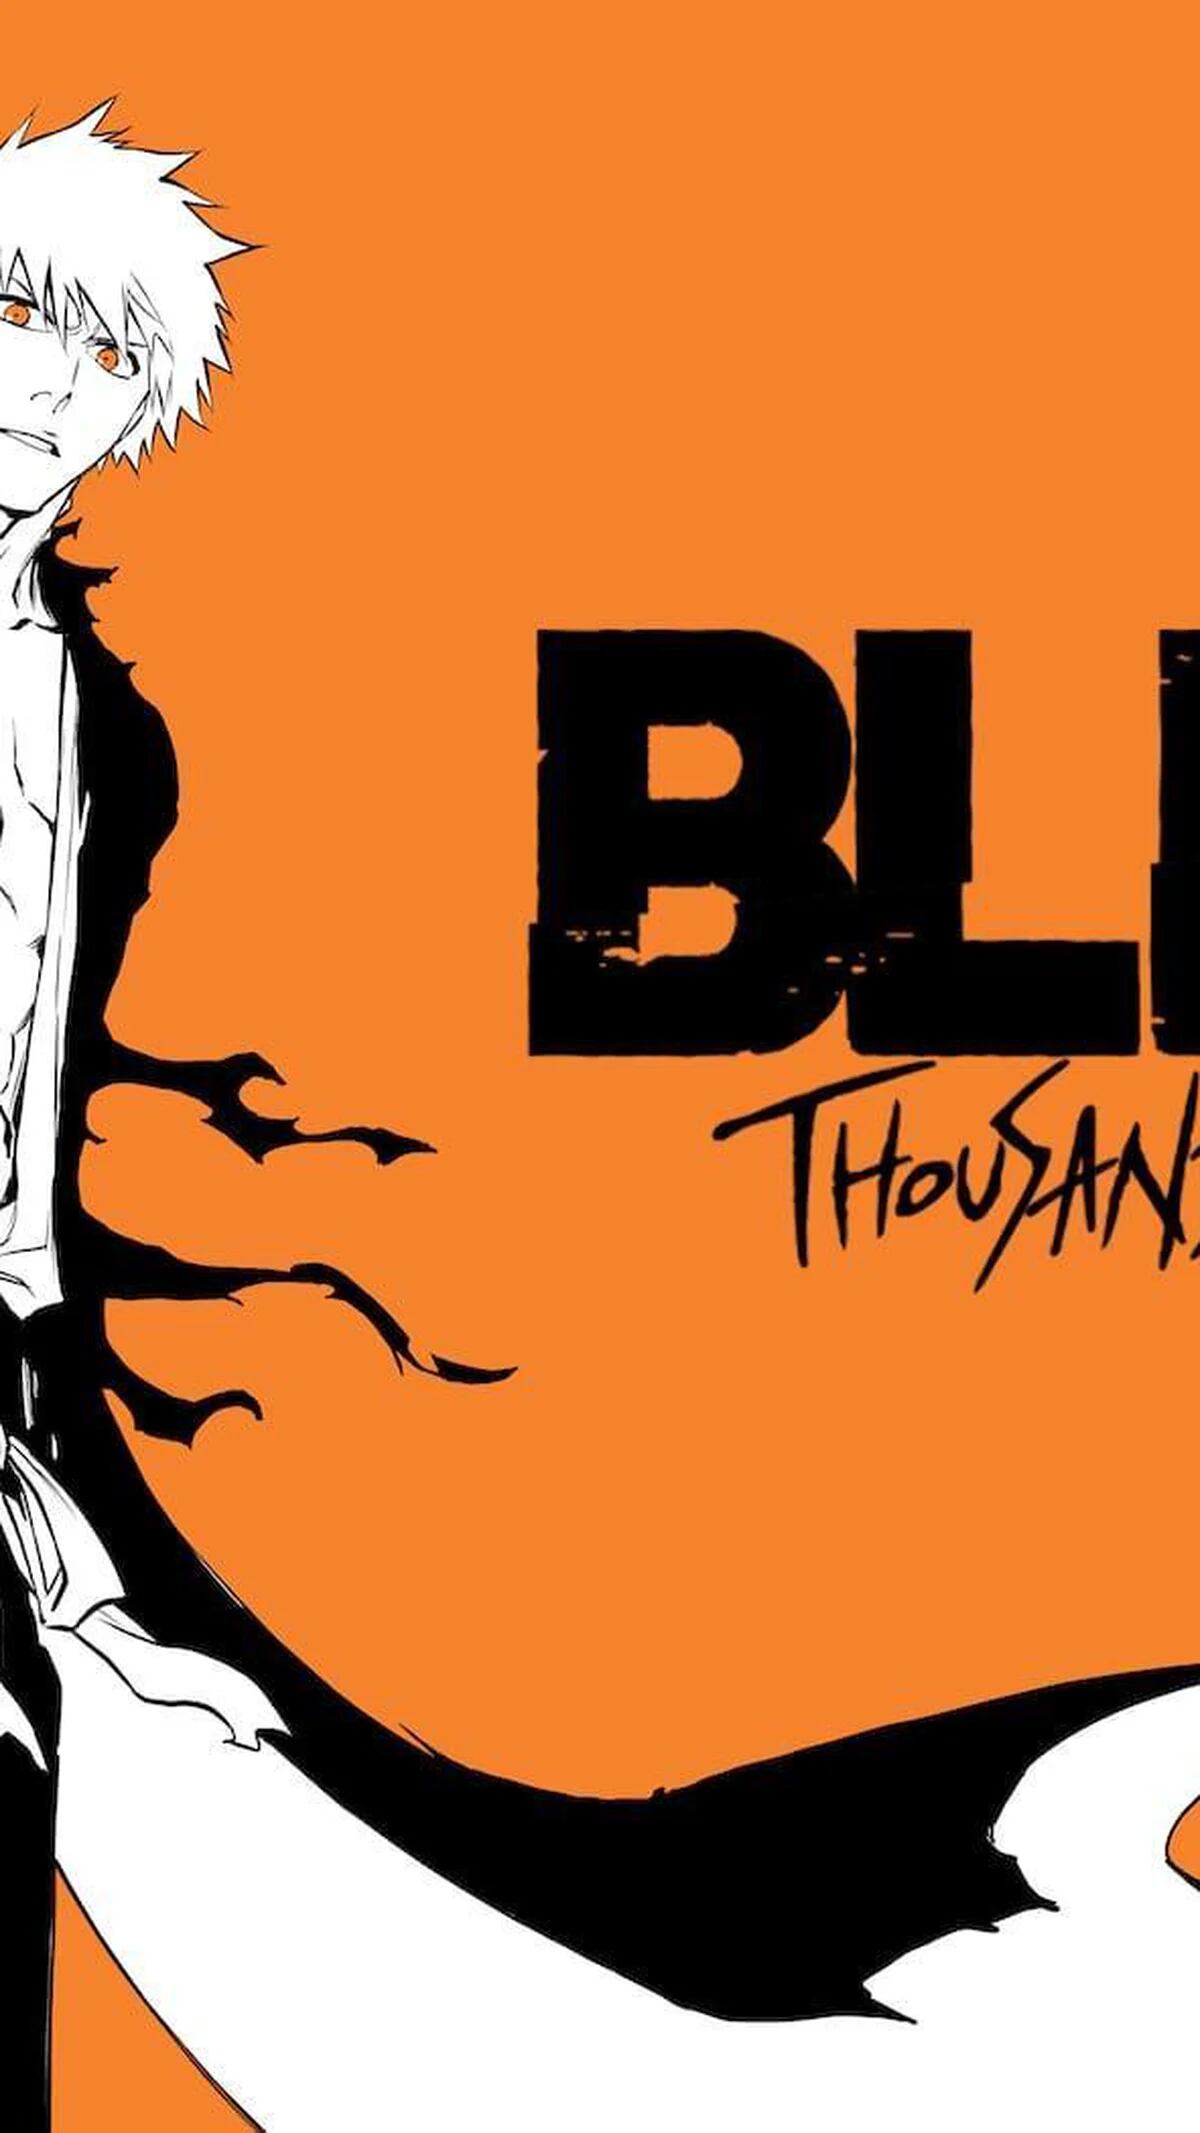 Bleach: Thousand-Year Blood War retorna na temporada de Julho de 2023 –  Tomodachi Nerd's